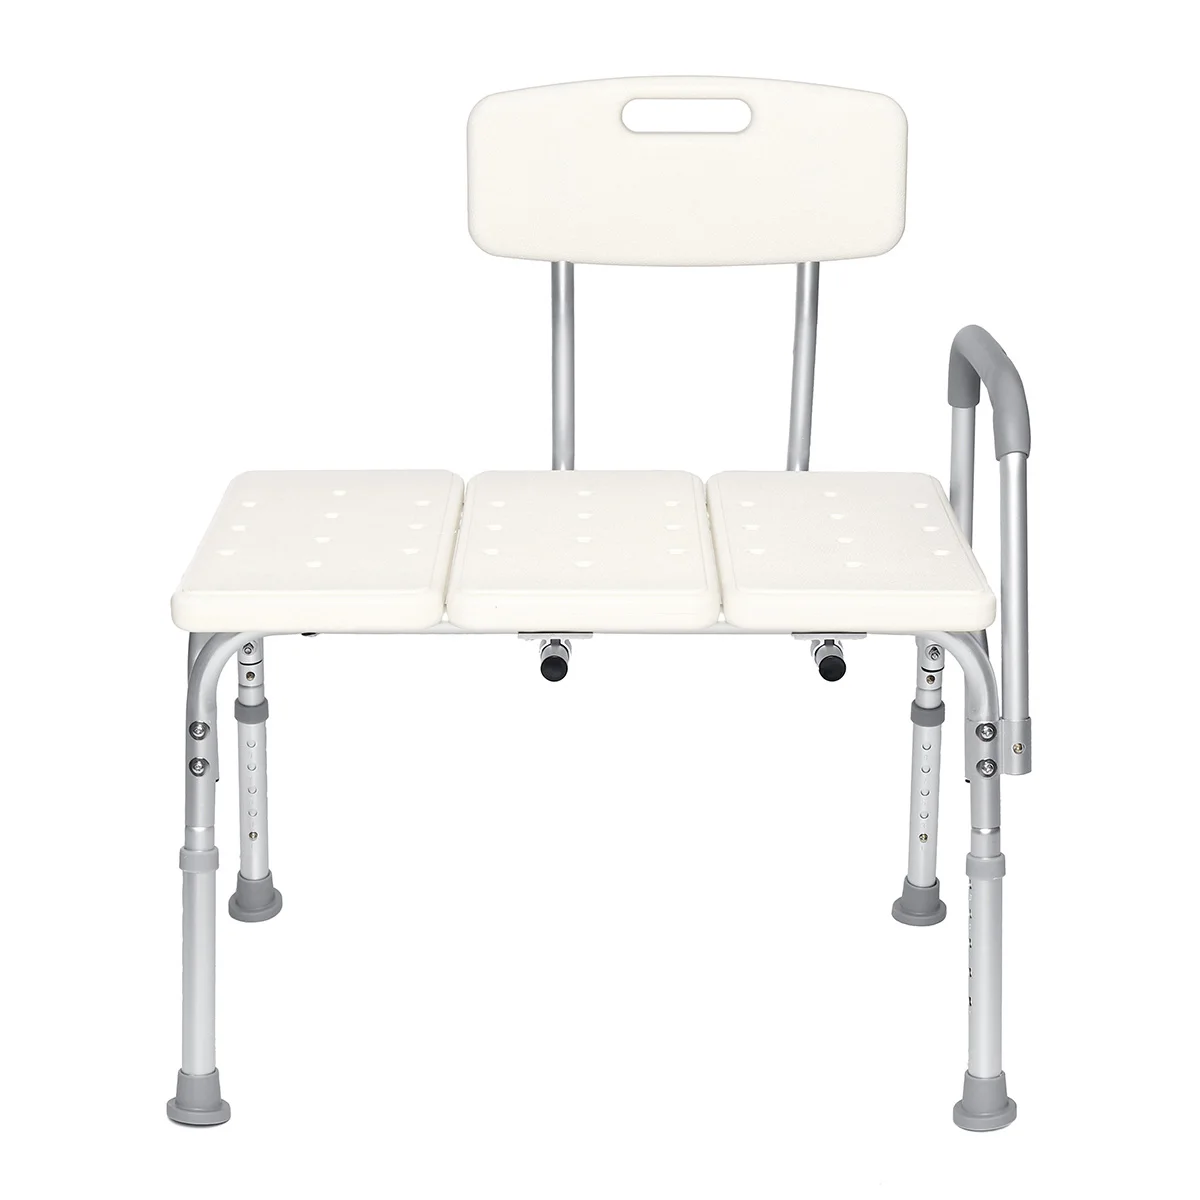 Регулируемый по высоте стул для душа переносная скамья ванна с ручками стулья для ванной комнаты стулья для купания медицинские